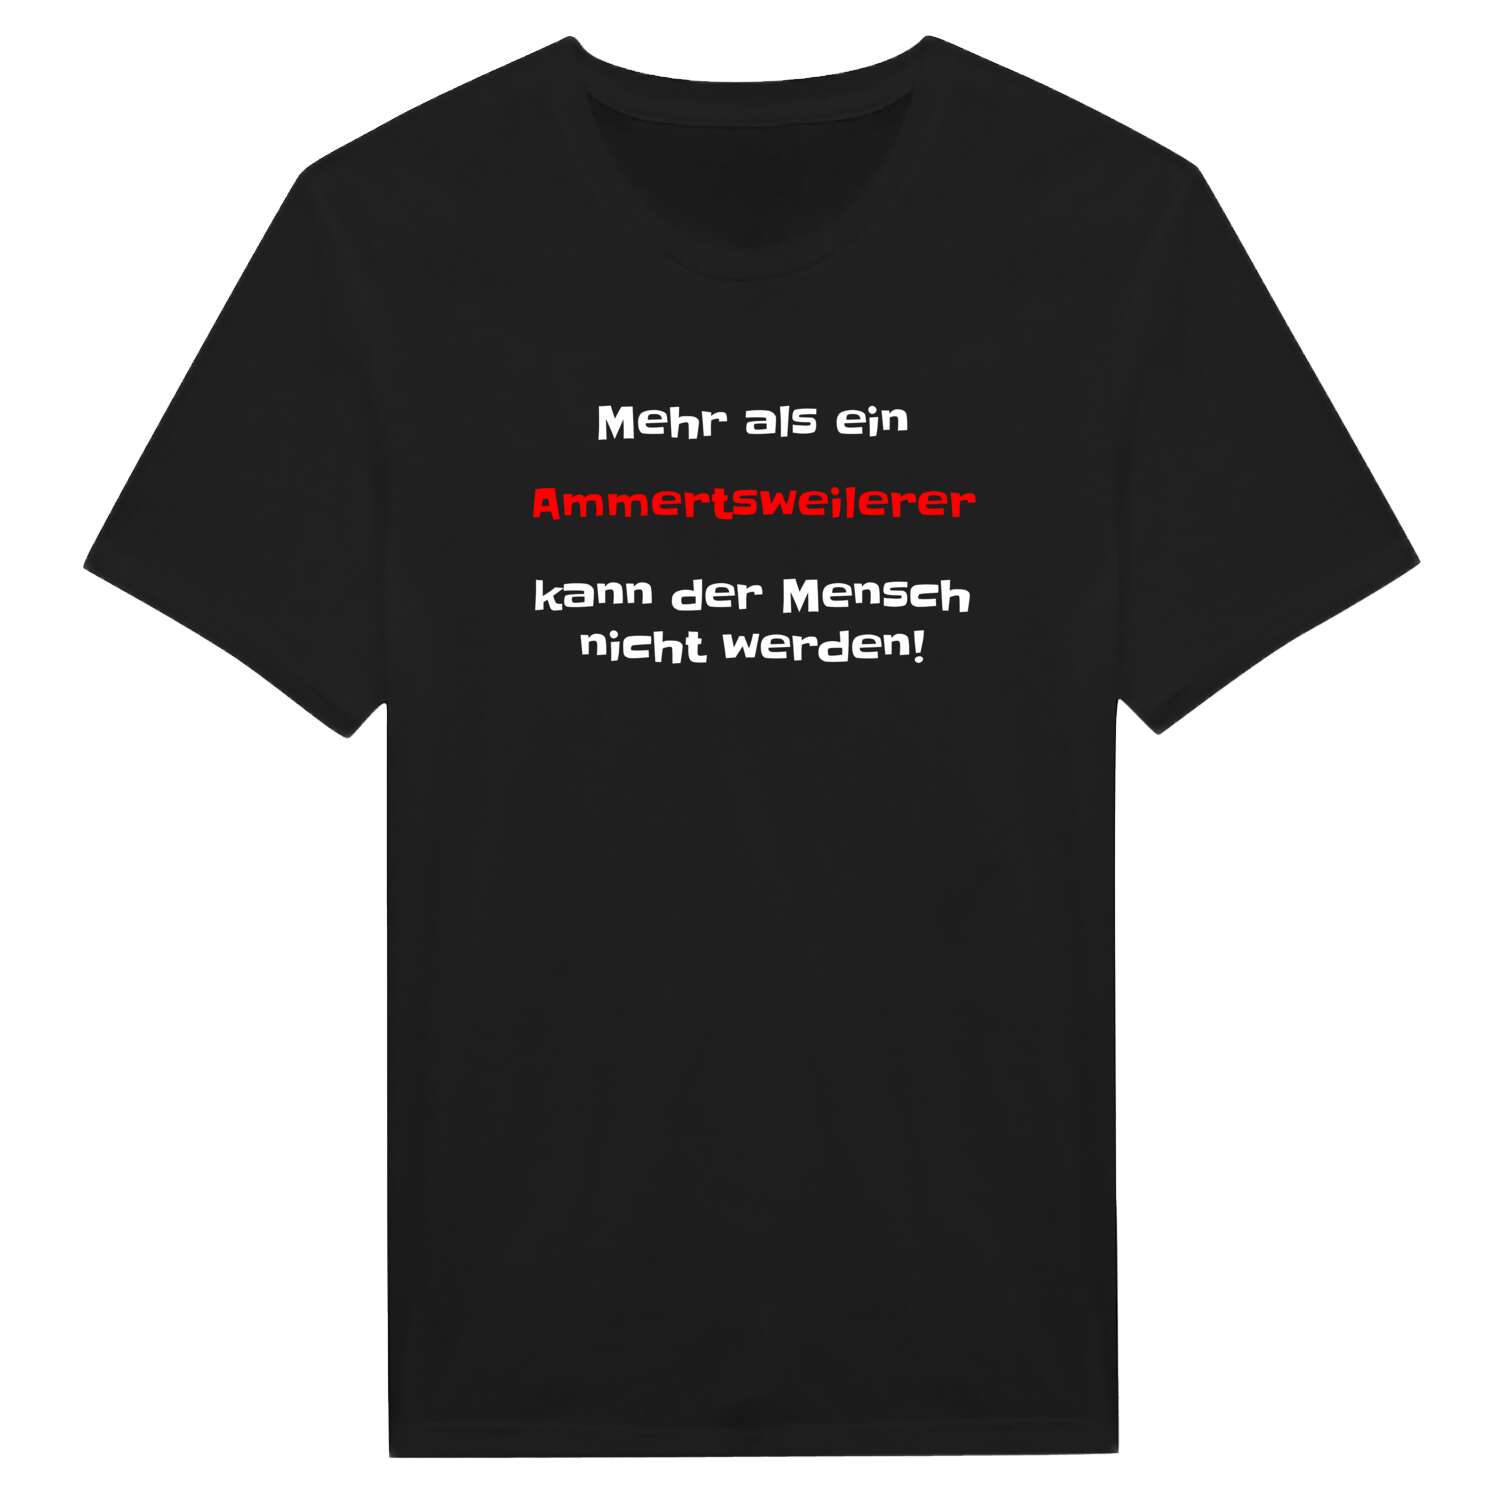 Ammertsweiler T-Shirt »Mehr als ein«